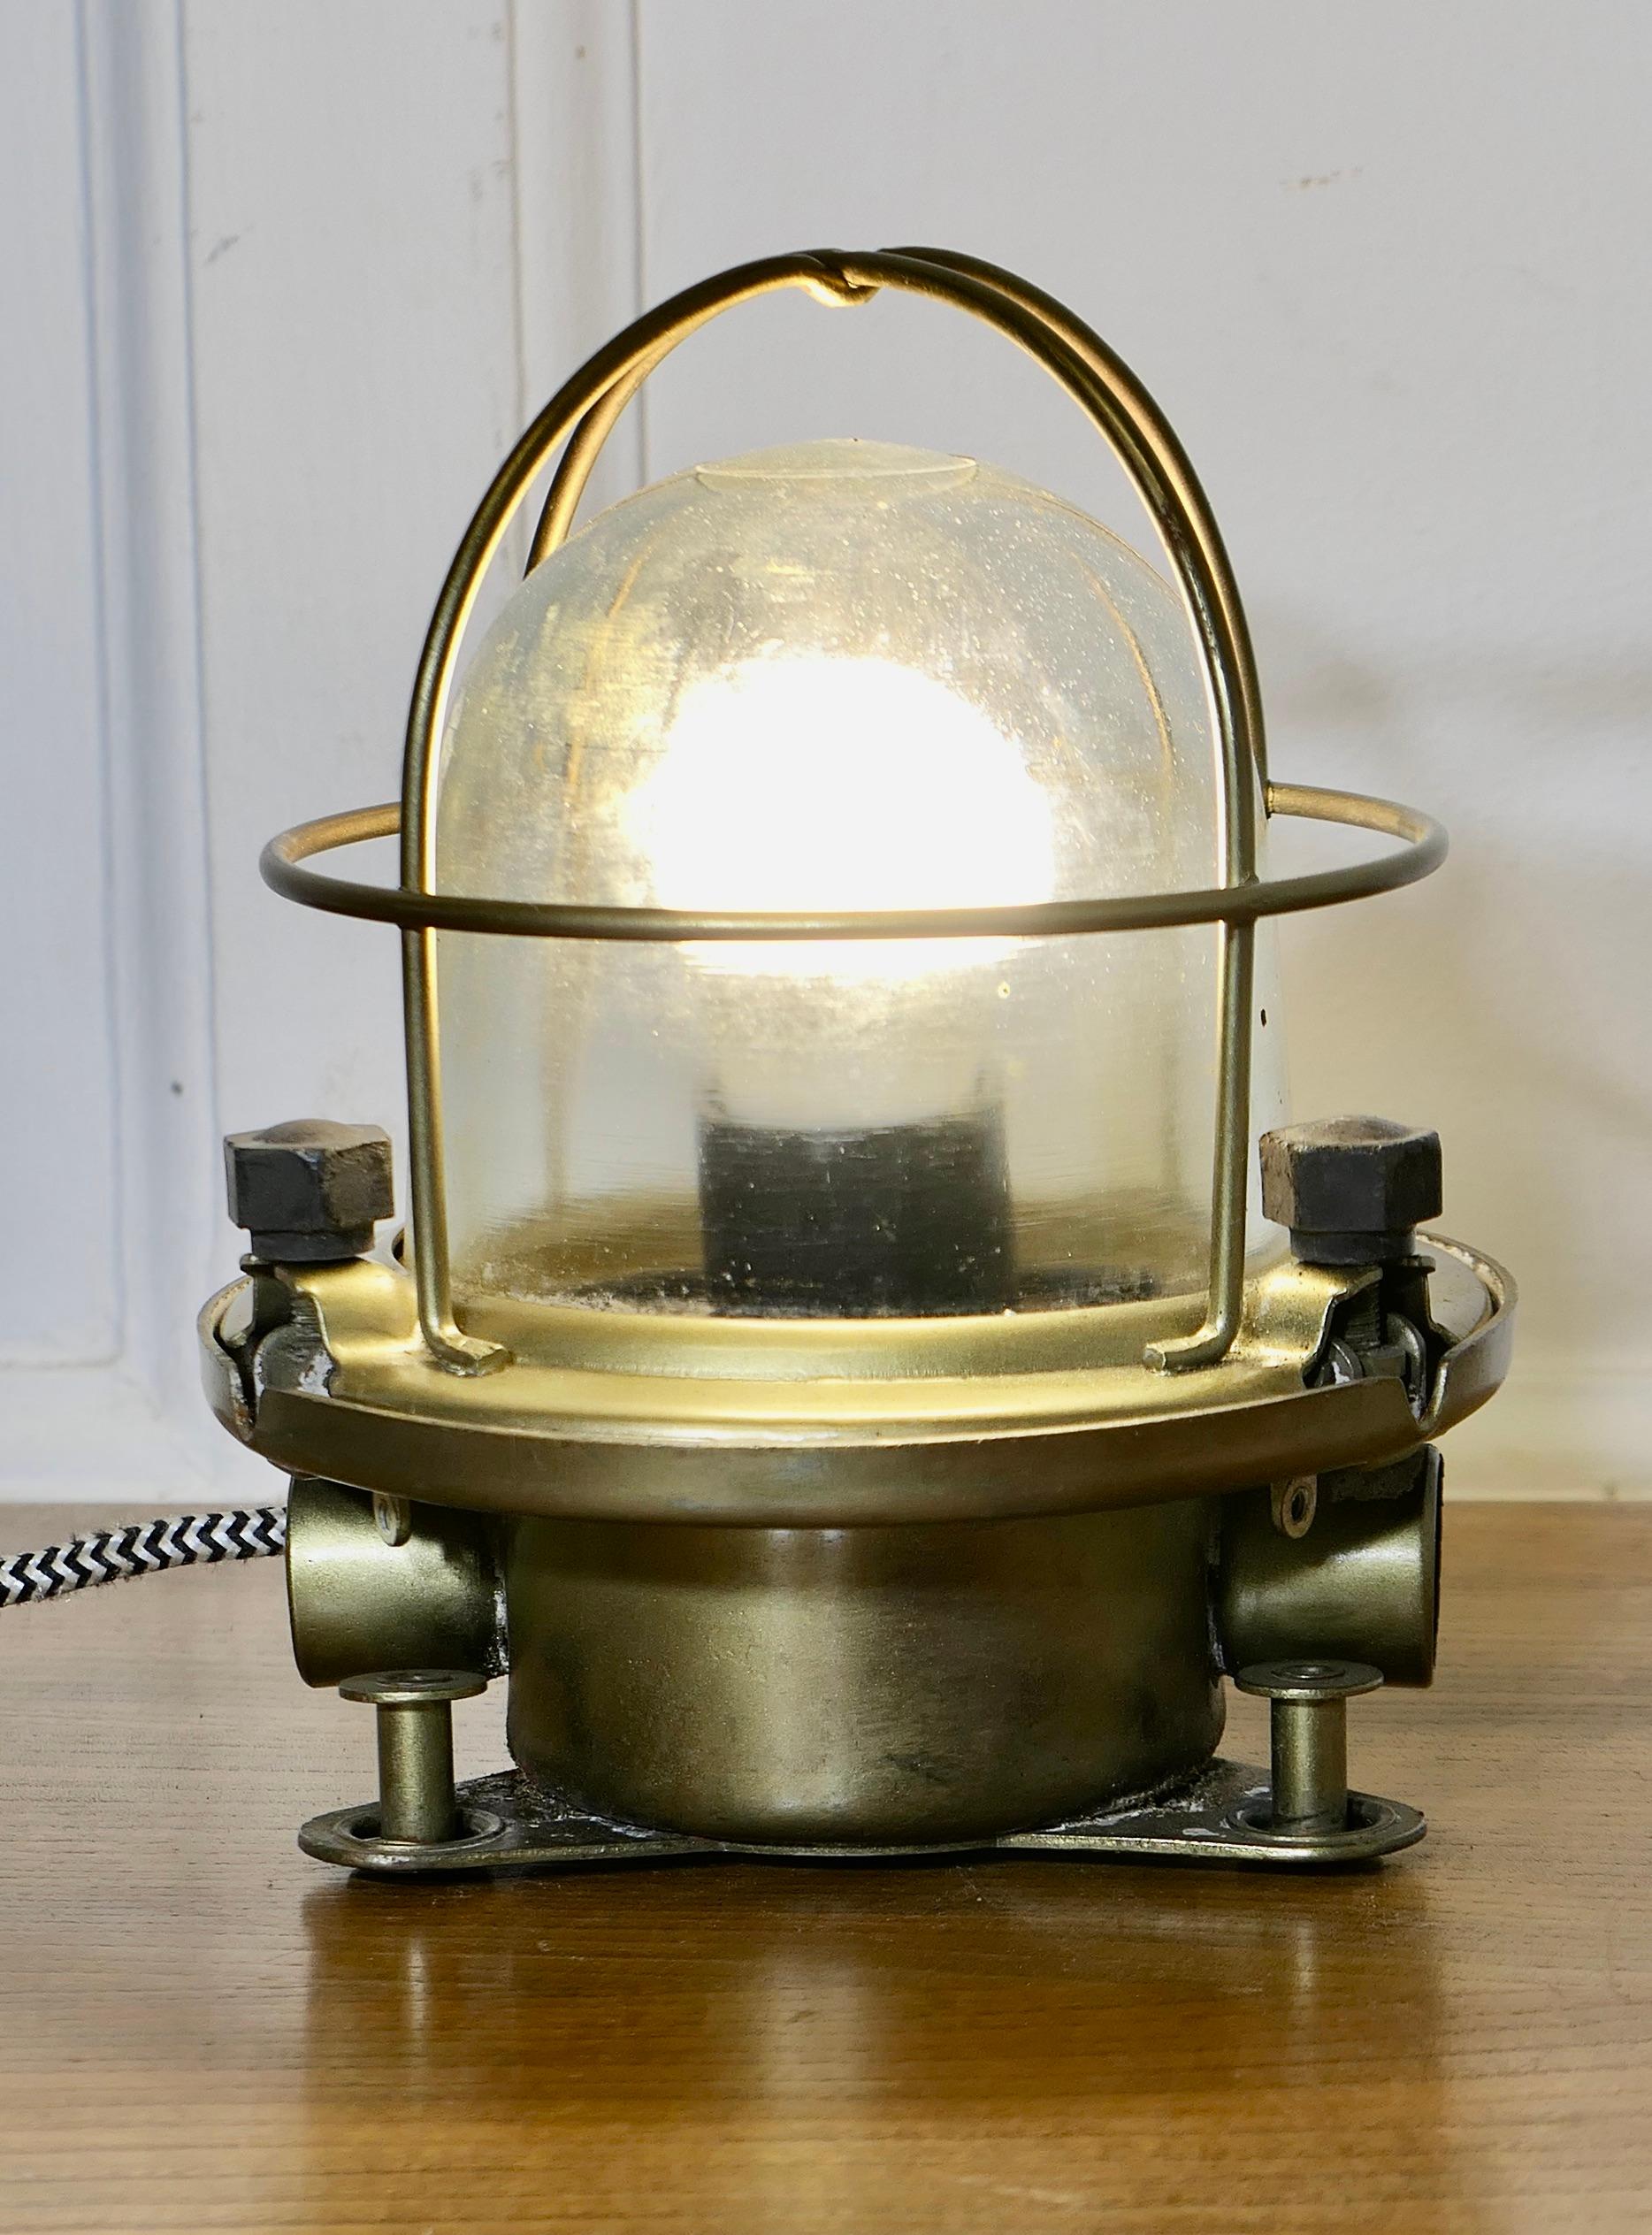 Lampe de tête en laiton vintage et nautique  

La lampe est en laiton elle a été entièrement restaurée et recâblée, elle peut être utilisée sur une table ou fixée au mur.
La lampe est en très bon état, elle a été recâblée et restaurée. Il y a des